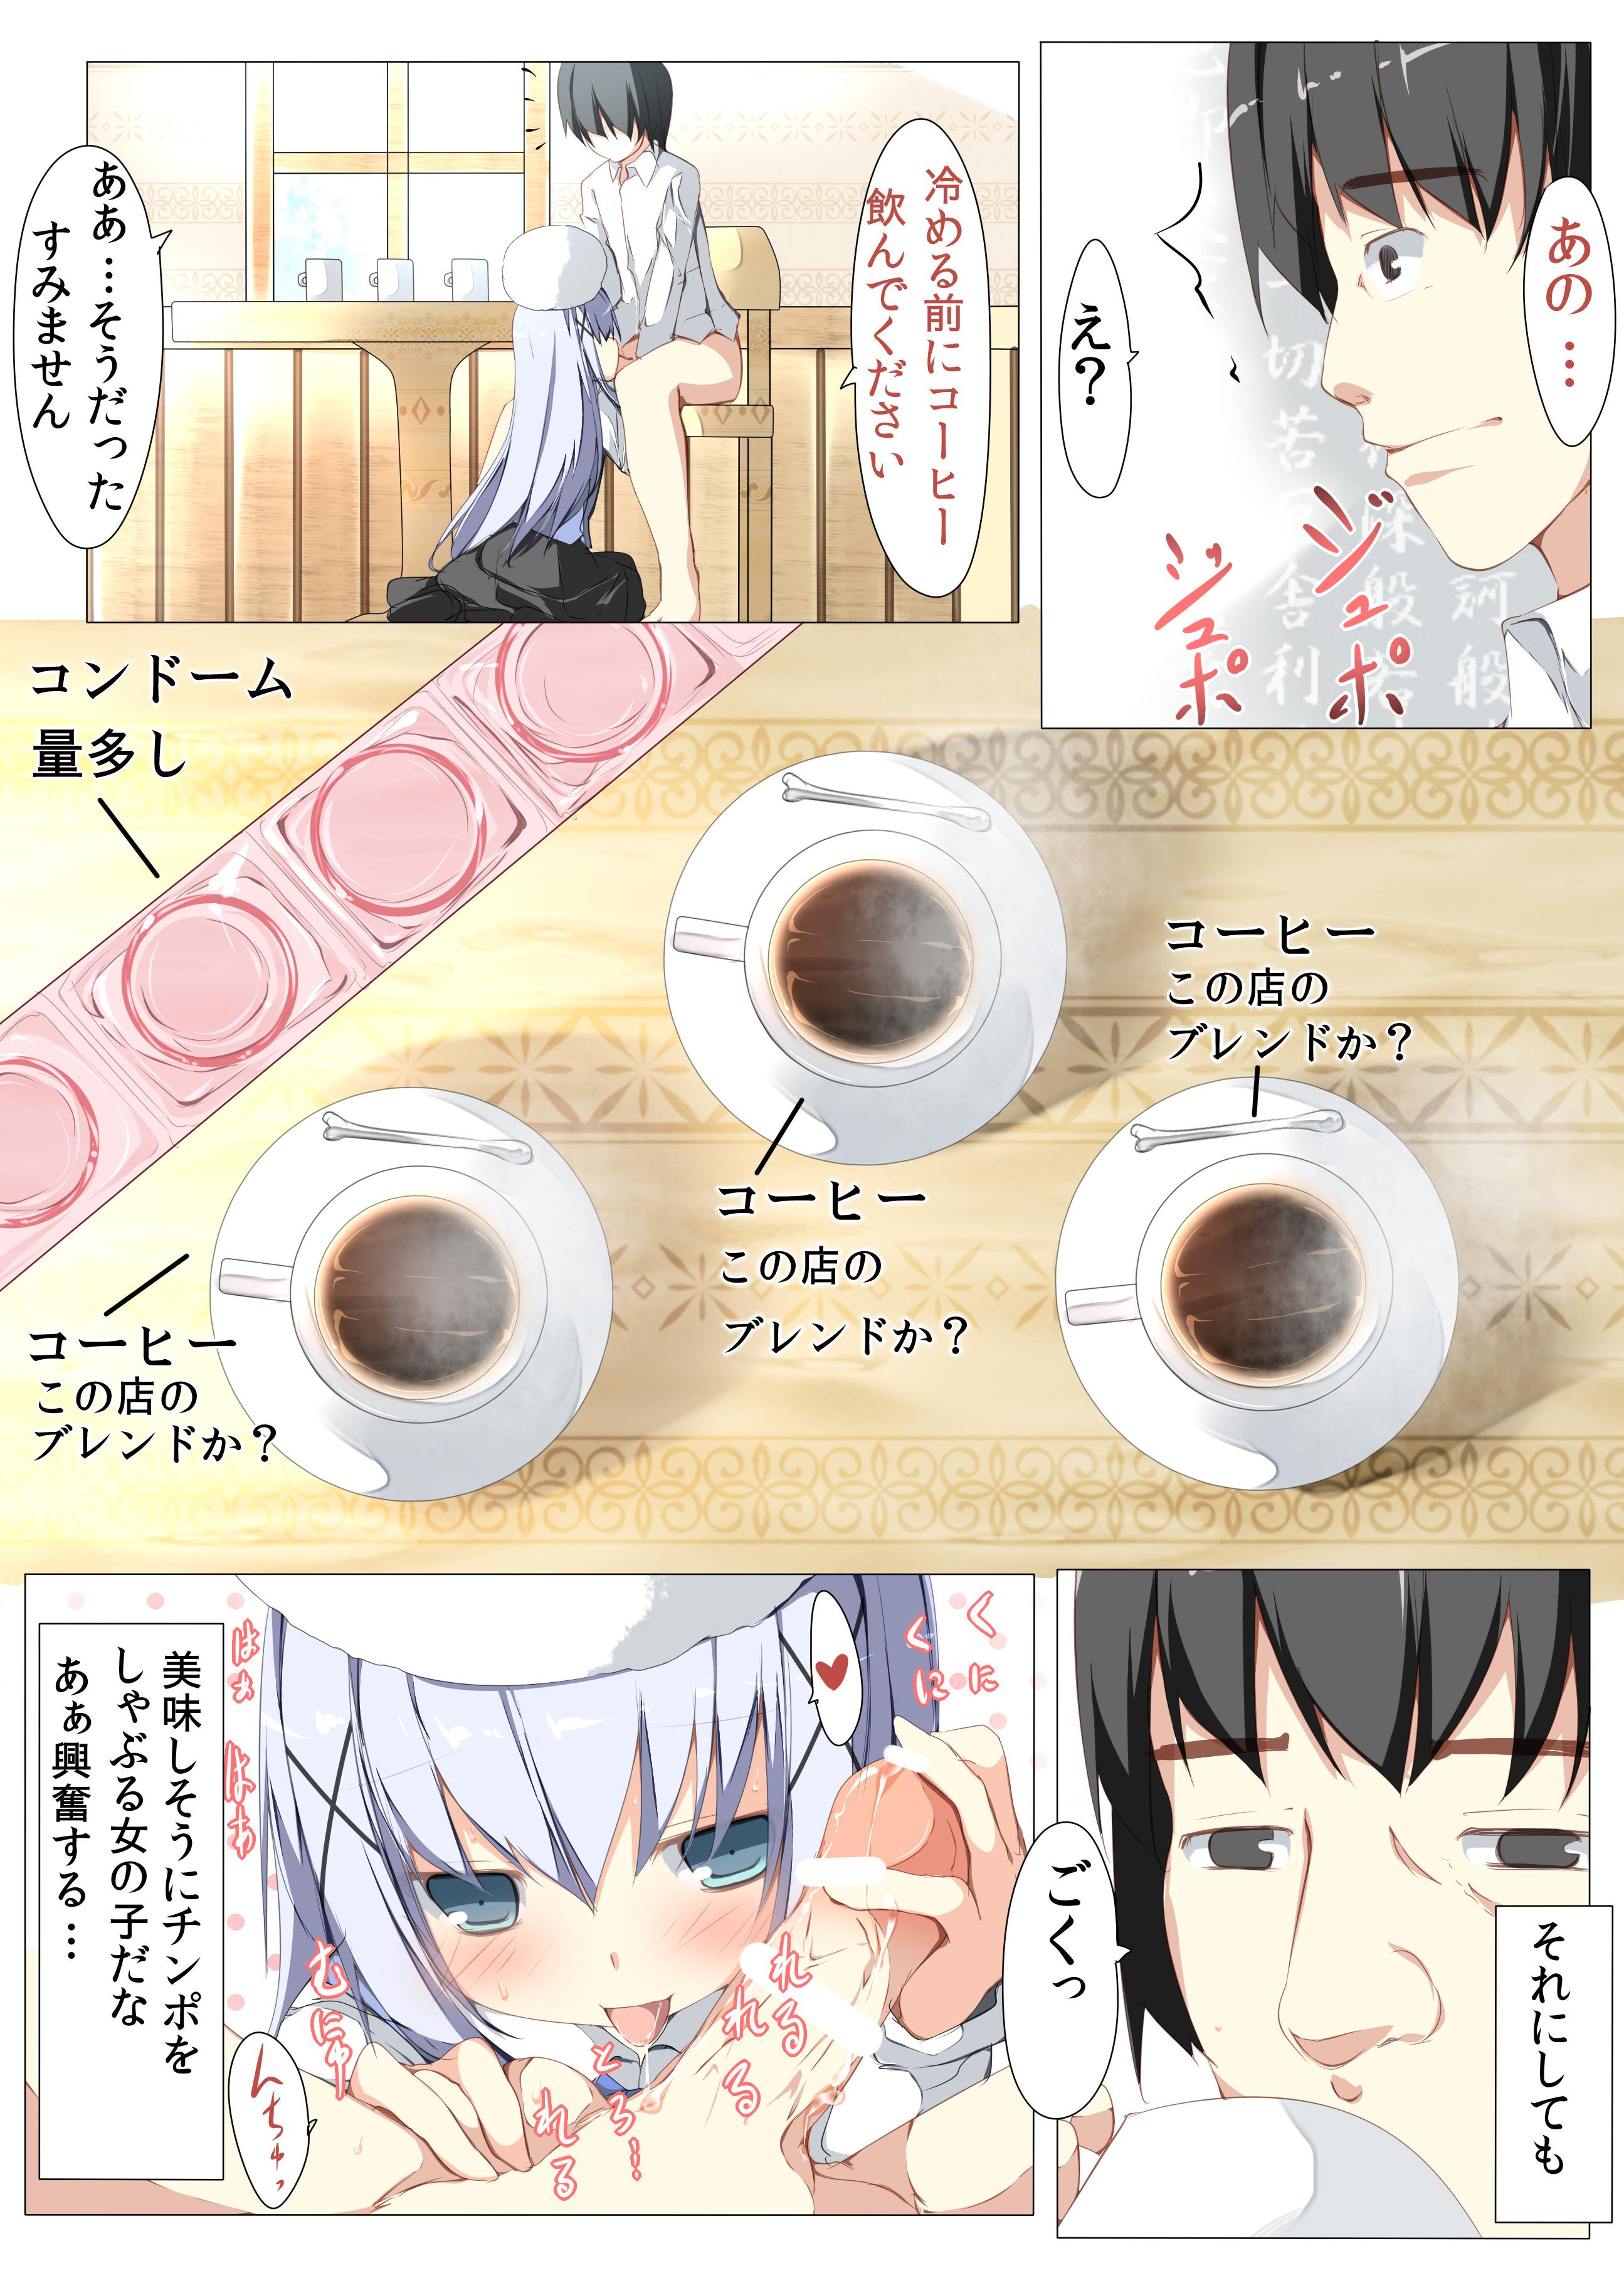 Hotfuck Chino-chan ga Coffee Ippai de Ippatsu Yarasete kureru Hon - Gochuumon wa usagi desu ka Periscope - Page 6